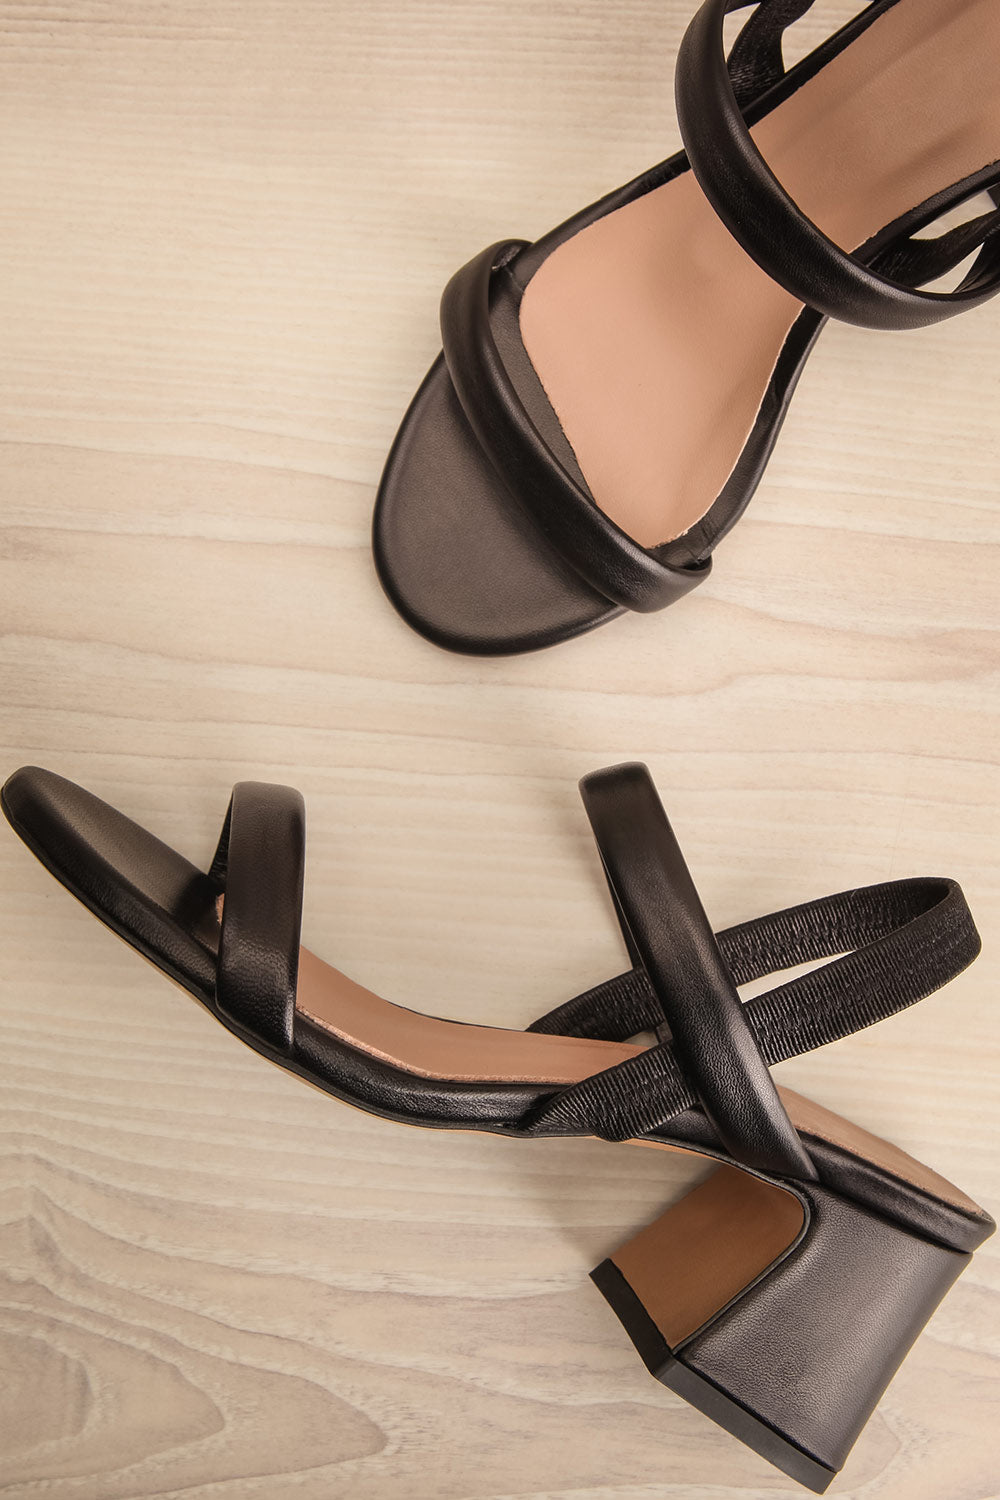 Cubisme Strappy Block Heel leather Sandals | La petite garçonne flat view